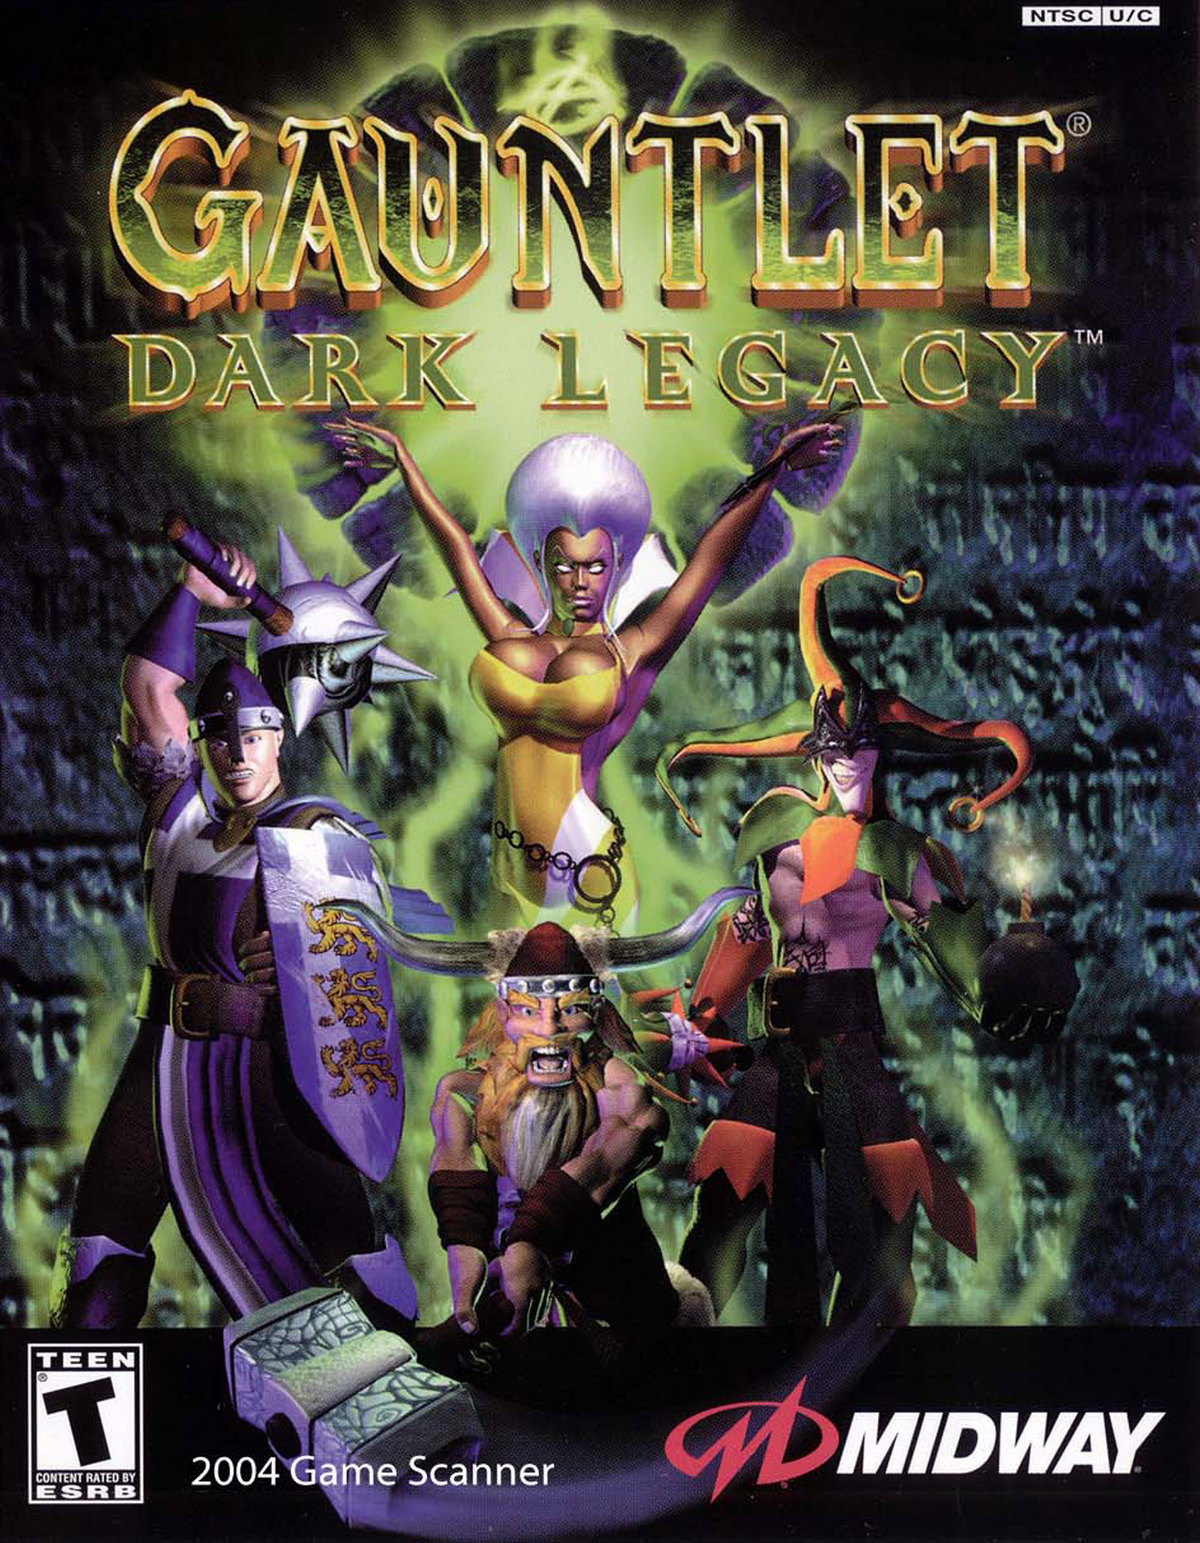 Gauntlet Legends - Wikipedia